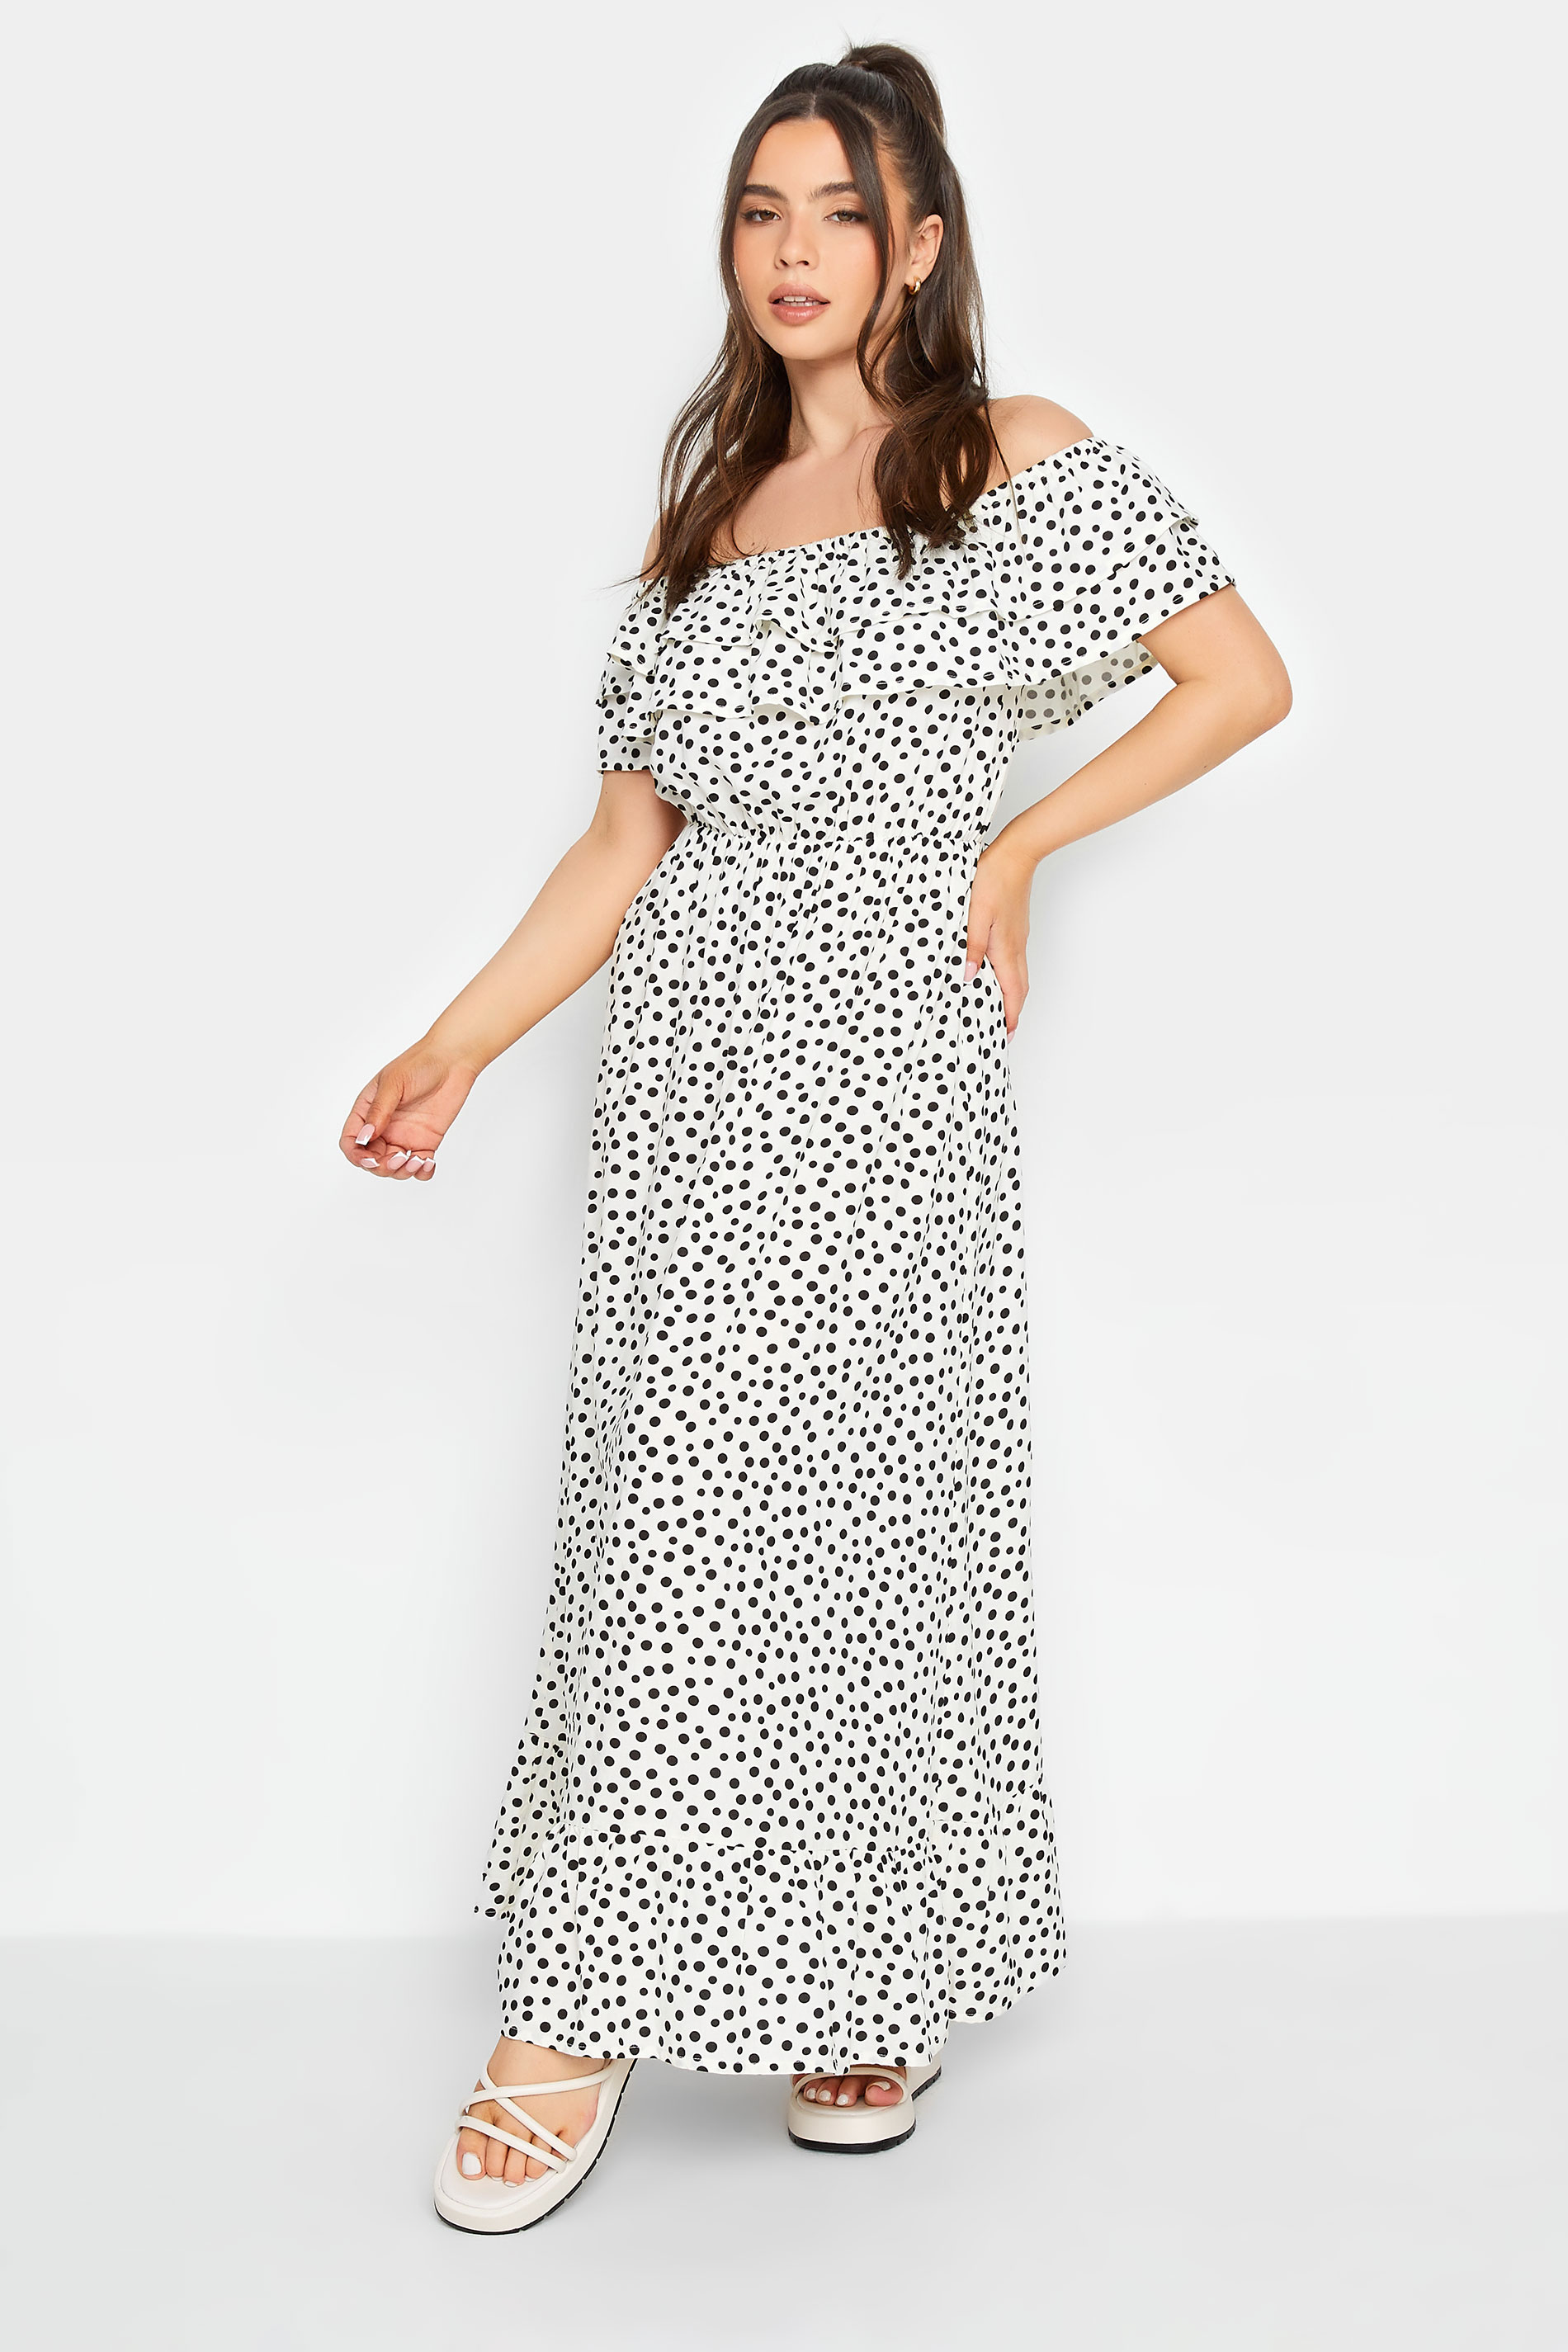 PixieGirl White Polka Dot Frill Bardot Maxi Dress | PixieGirl 1